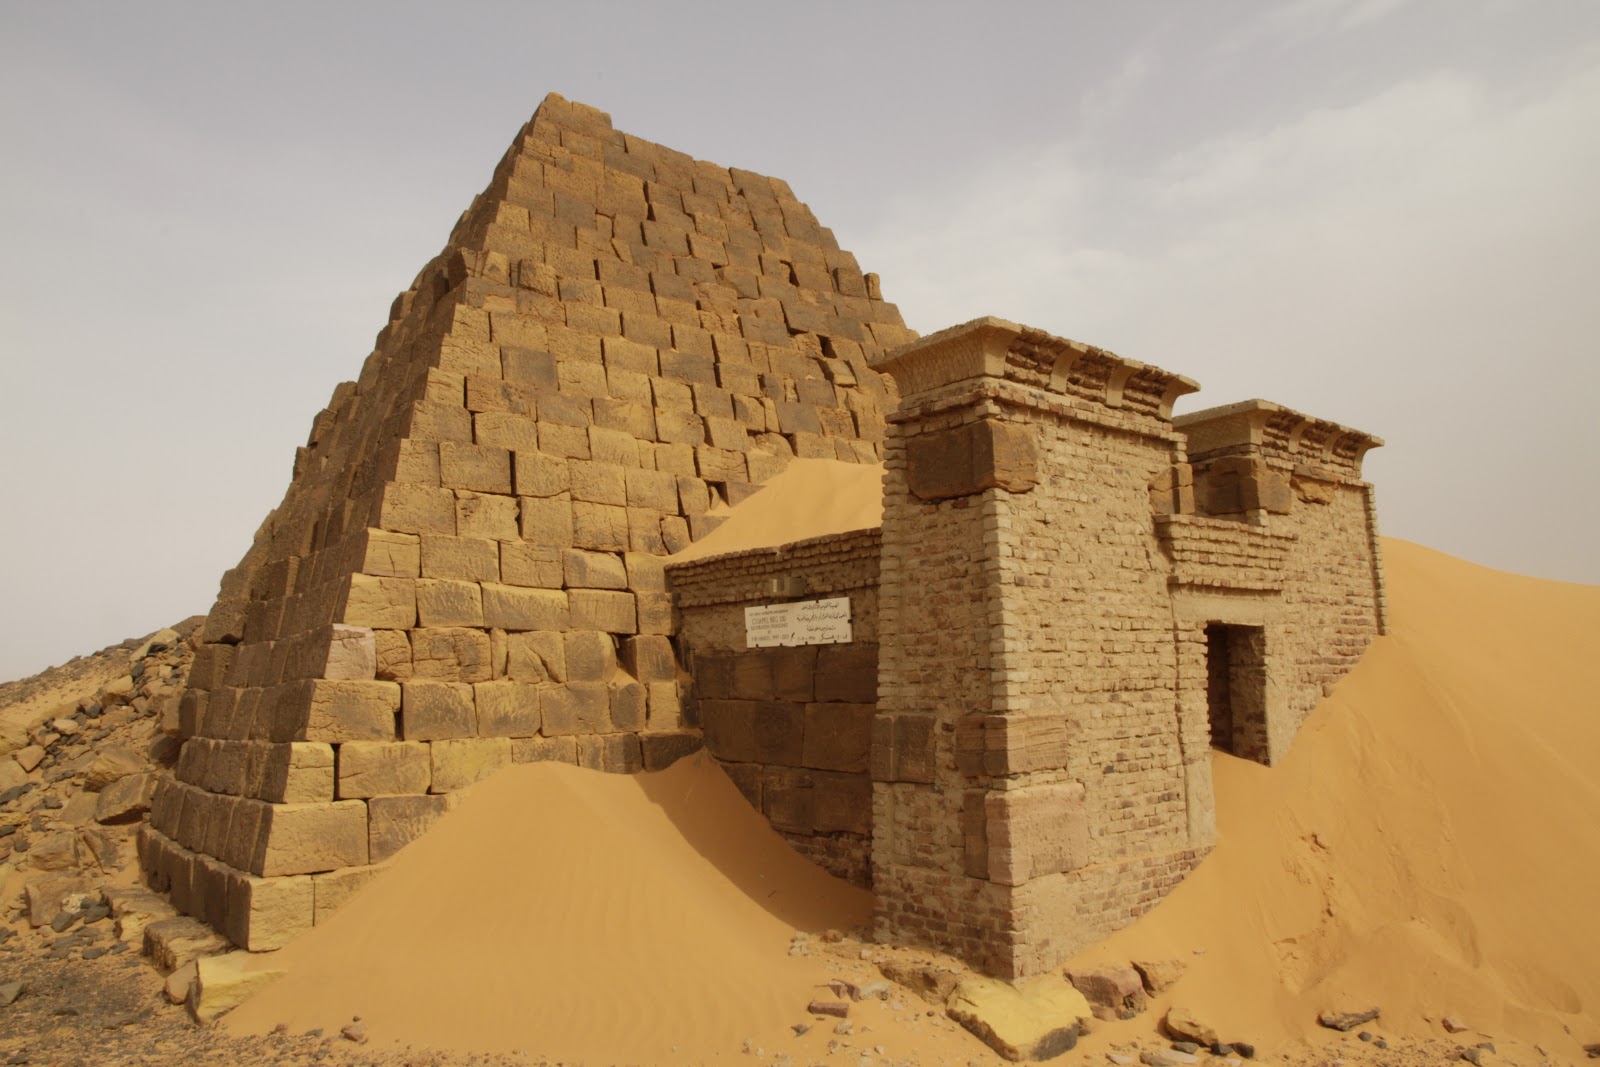 Характер взаимоотношений с природой цивилизации мероэ. Нубийские пирамиды Мероэ. Пирамиды Мероэ Судан. Нубийские пирамиды в Судане. Нубия в древнем Египте.